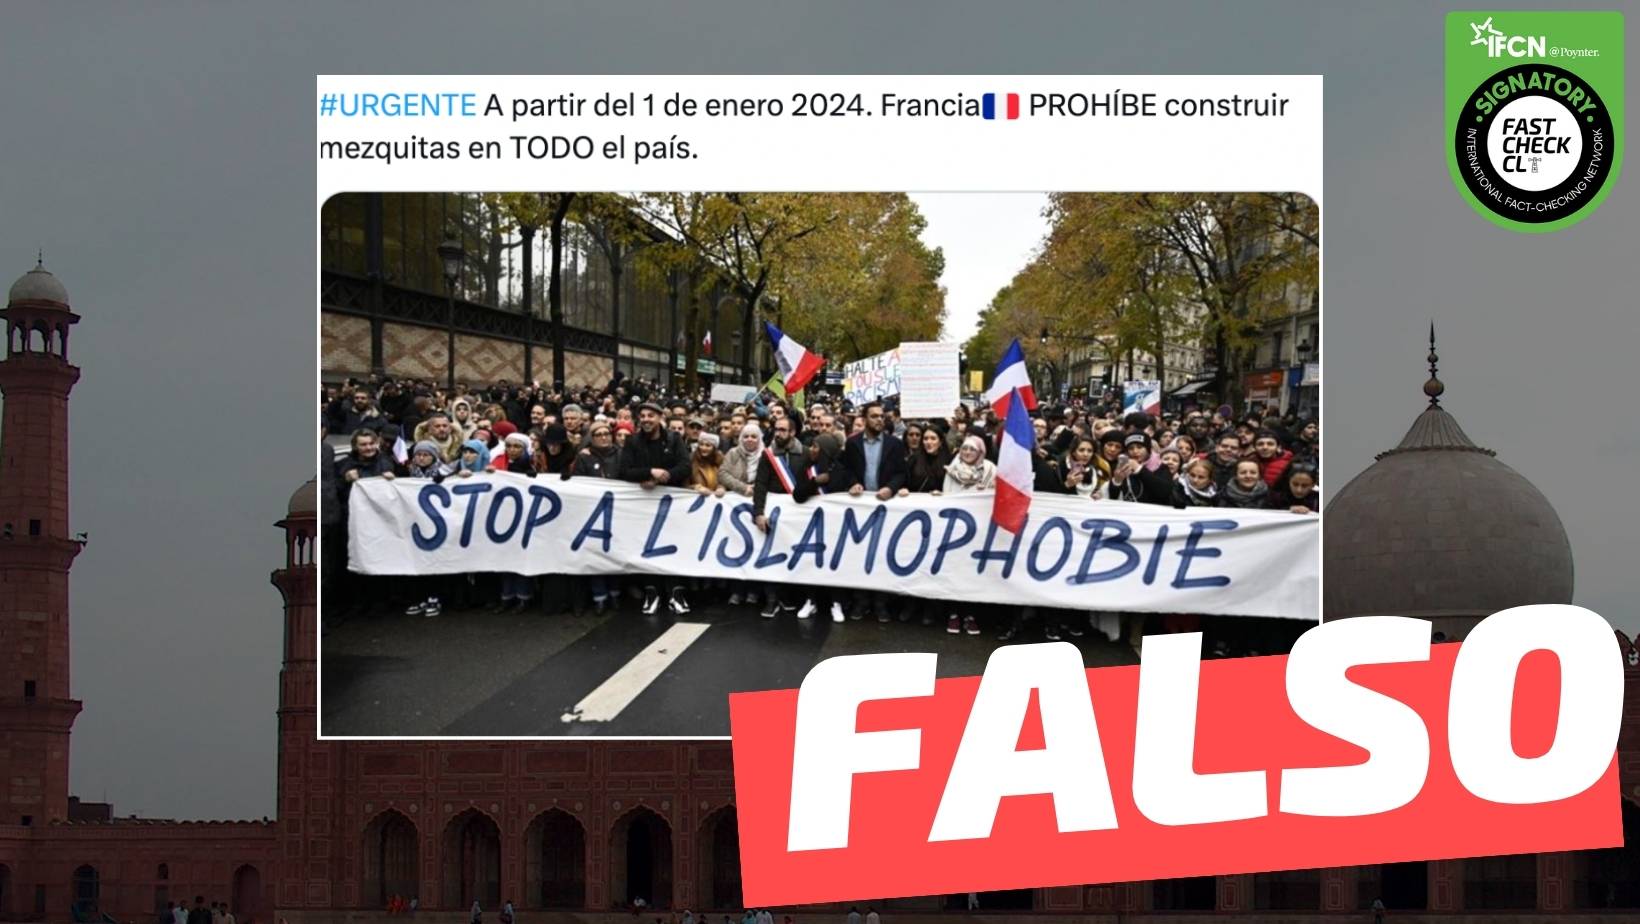 You are currently viewing “A partir del 1 de enero 2024, Francia prohíbe construir mezquitas en todo el país”: #Falso